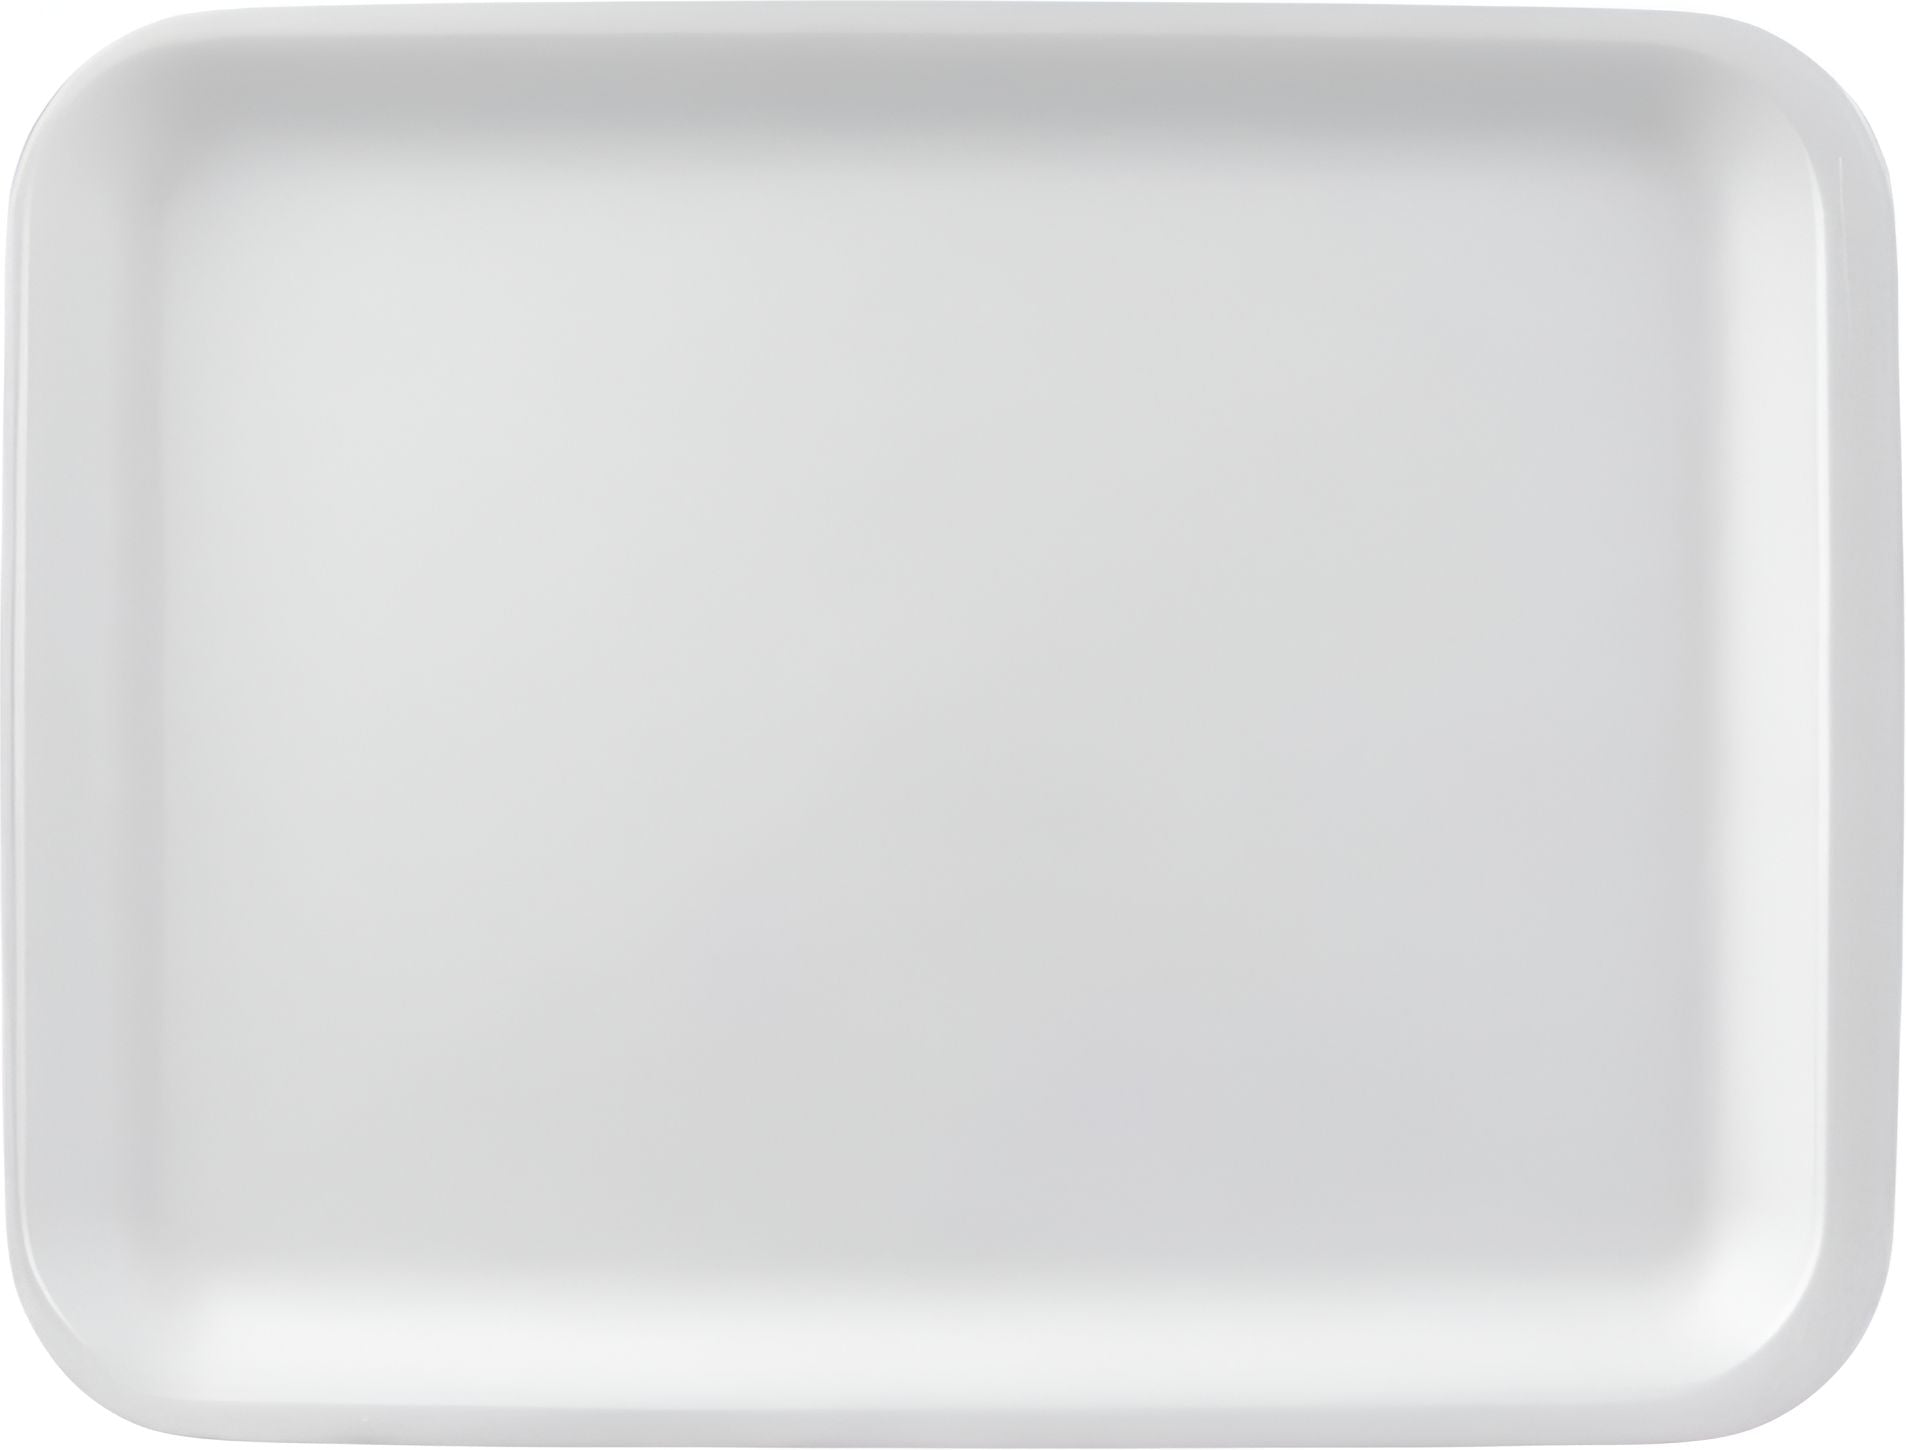 CKF Inc. - 8.75" x 6.75" x 0.5", 20S White Foam Trays, 500/Cs - 88120